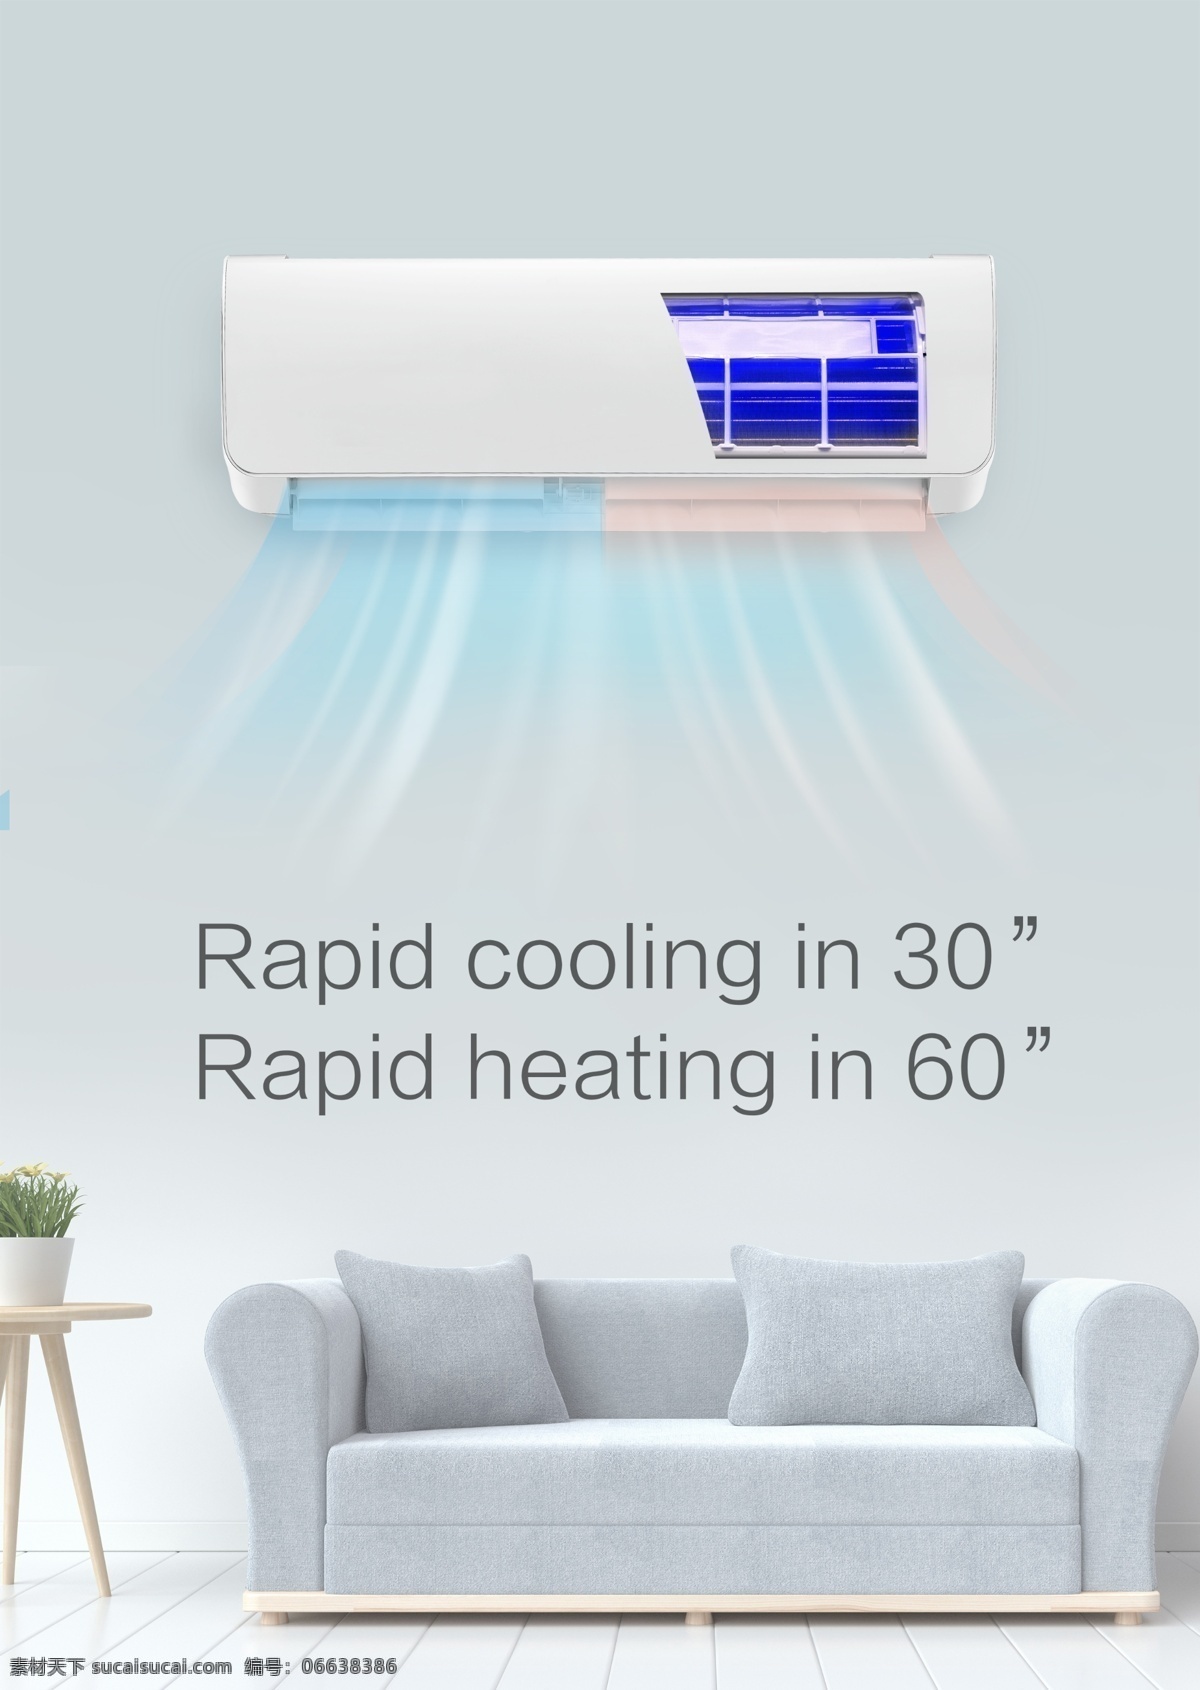 空调 挂机 内部 零件 空调挂机 内部零件 居家 卧室 急速冷热